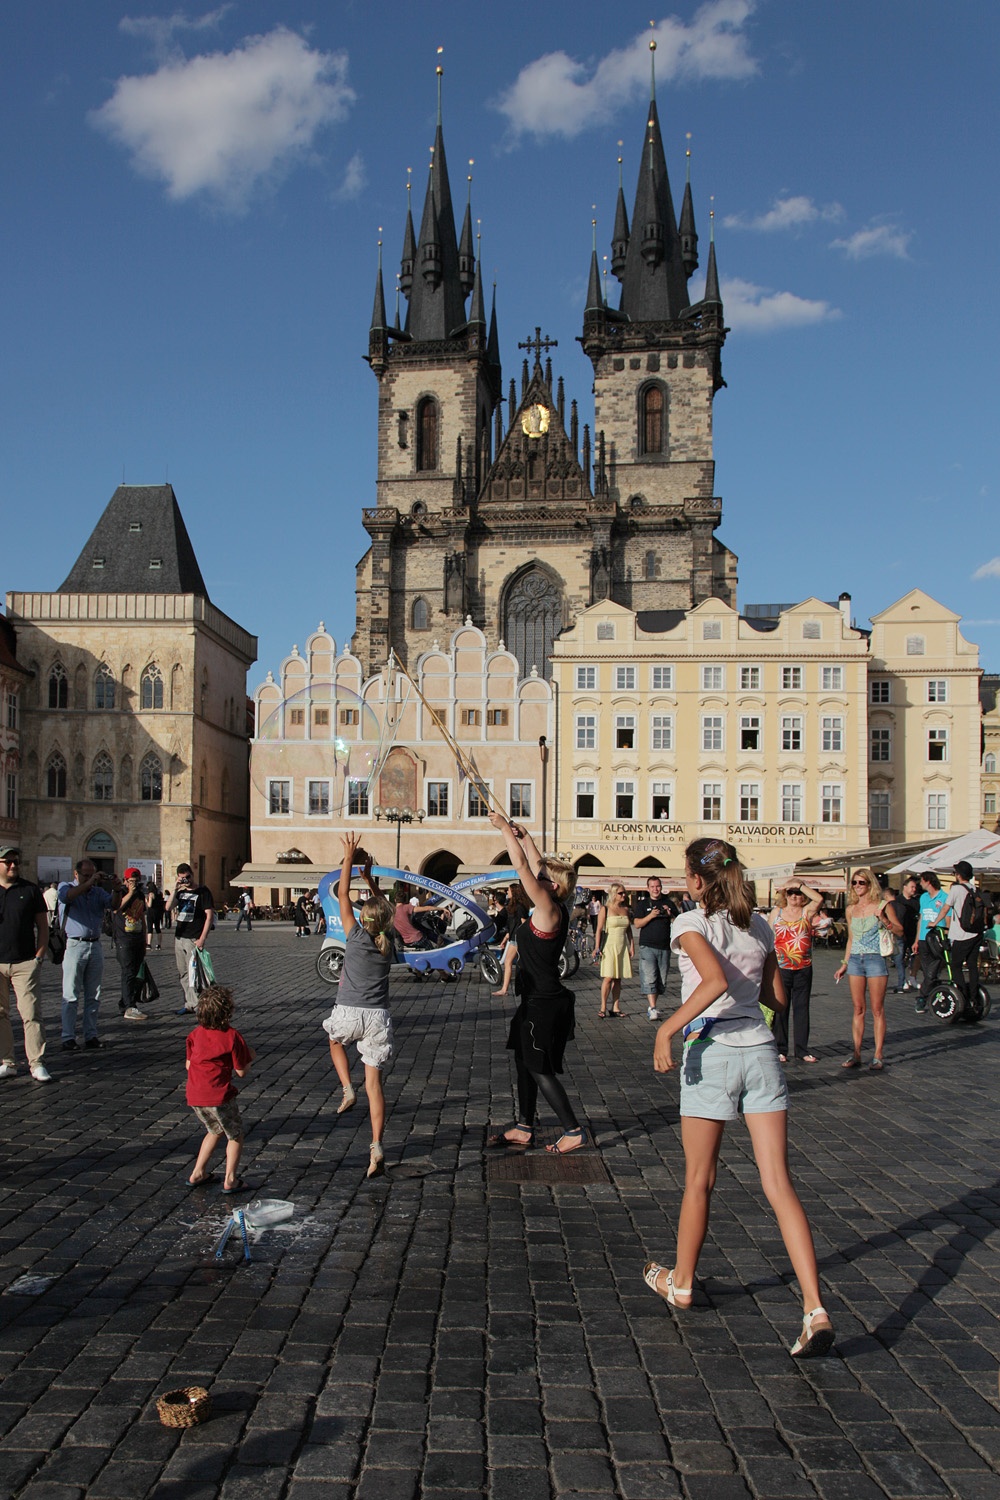 bill-hocker-old-town-square-prague-czech-republic-2013